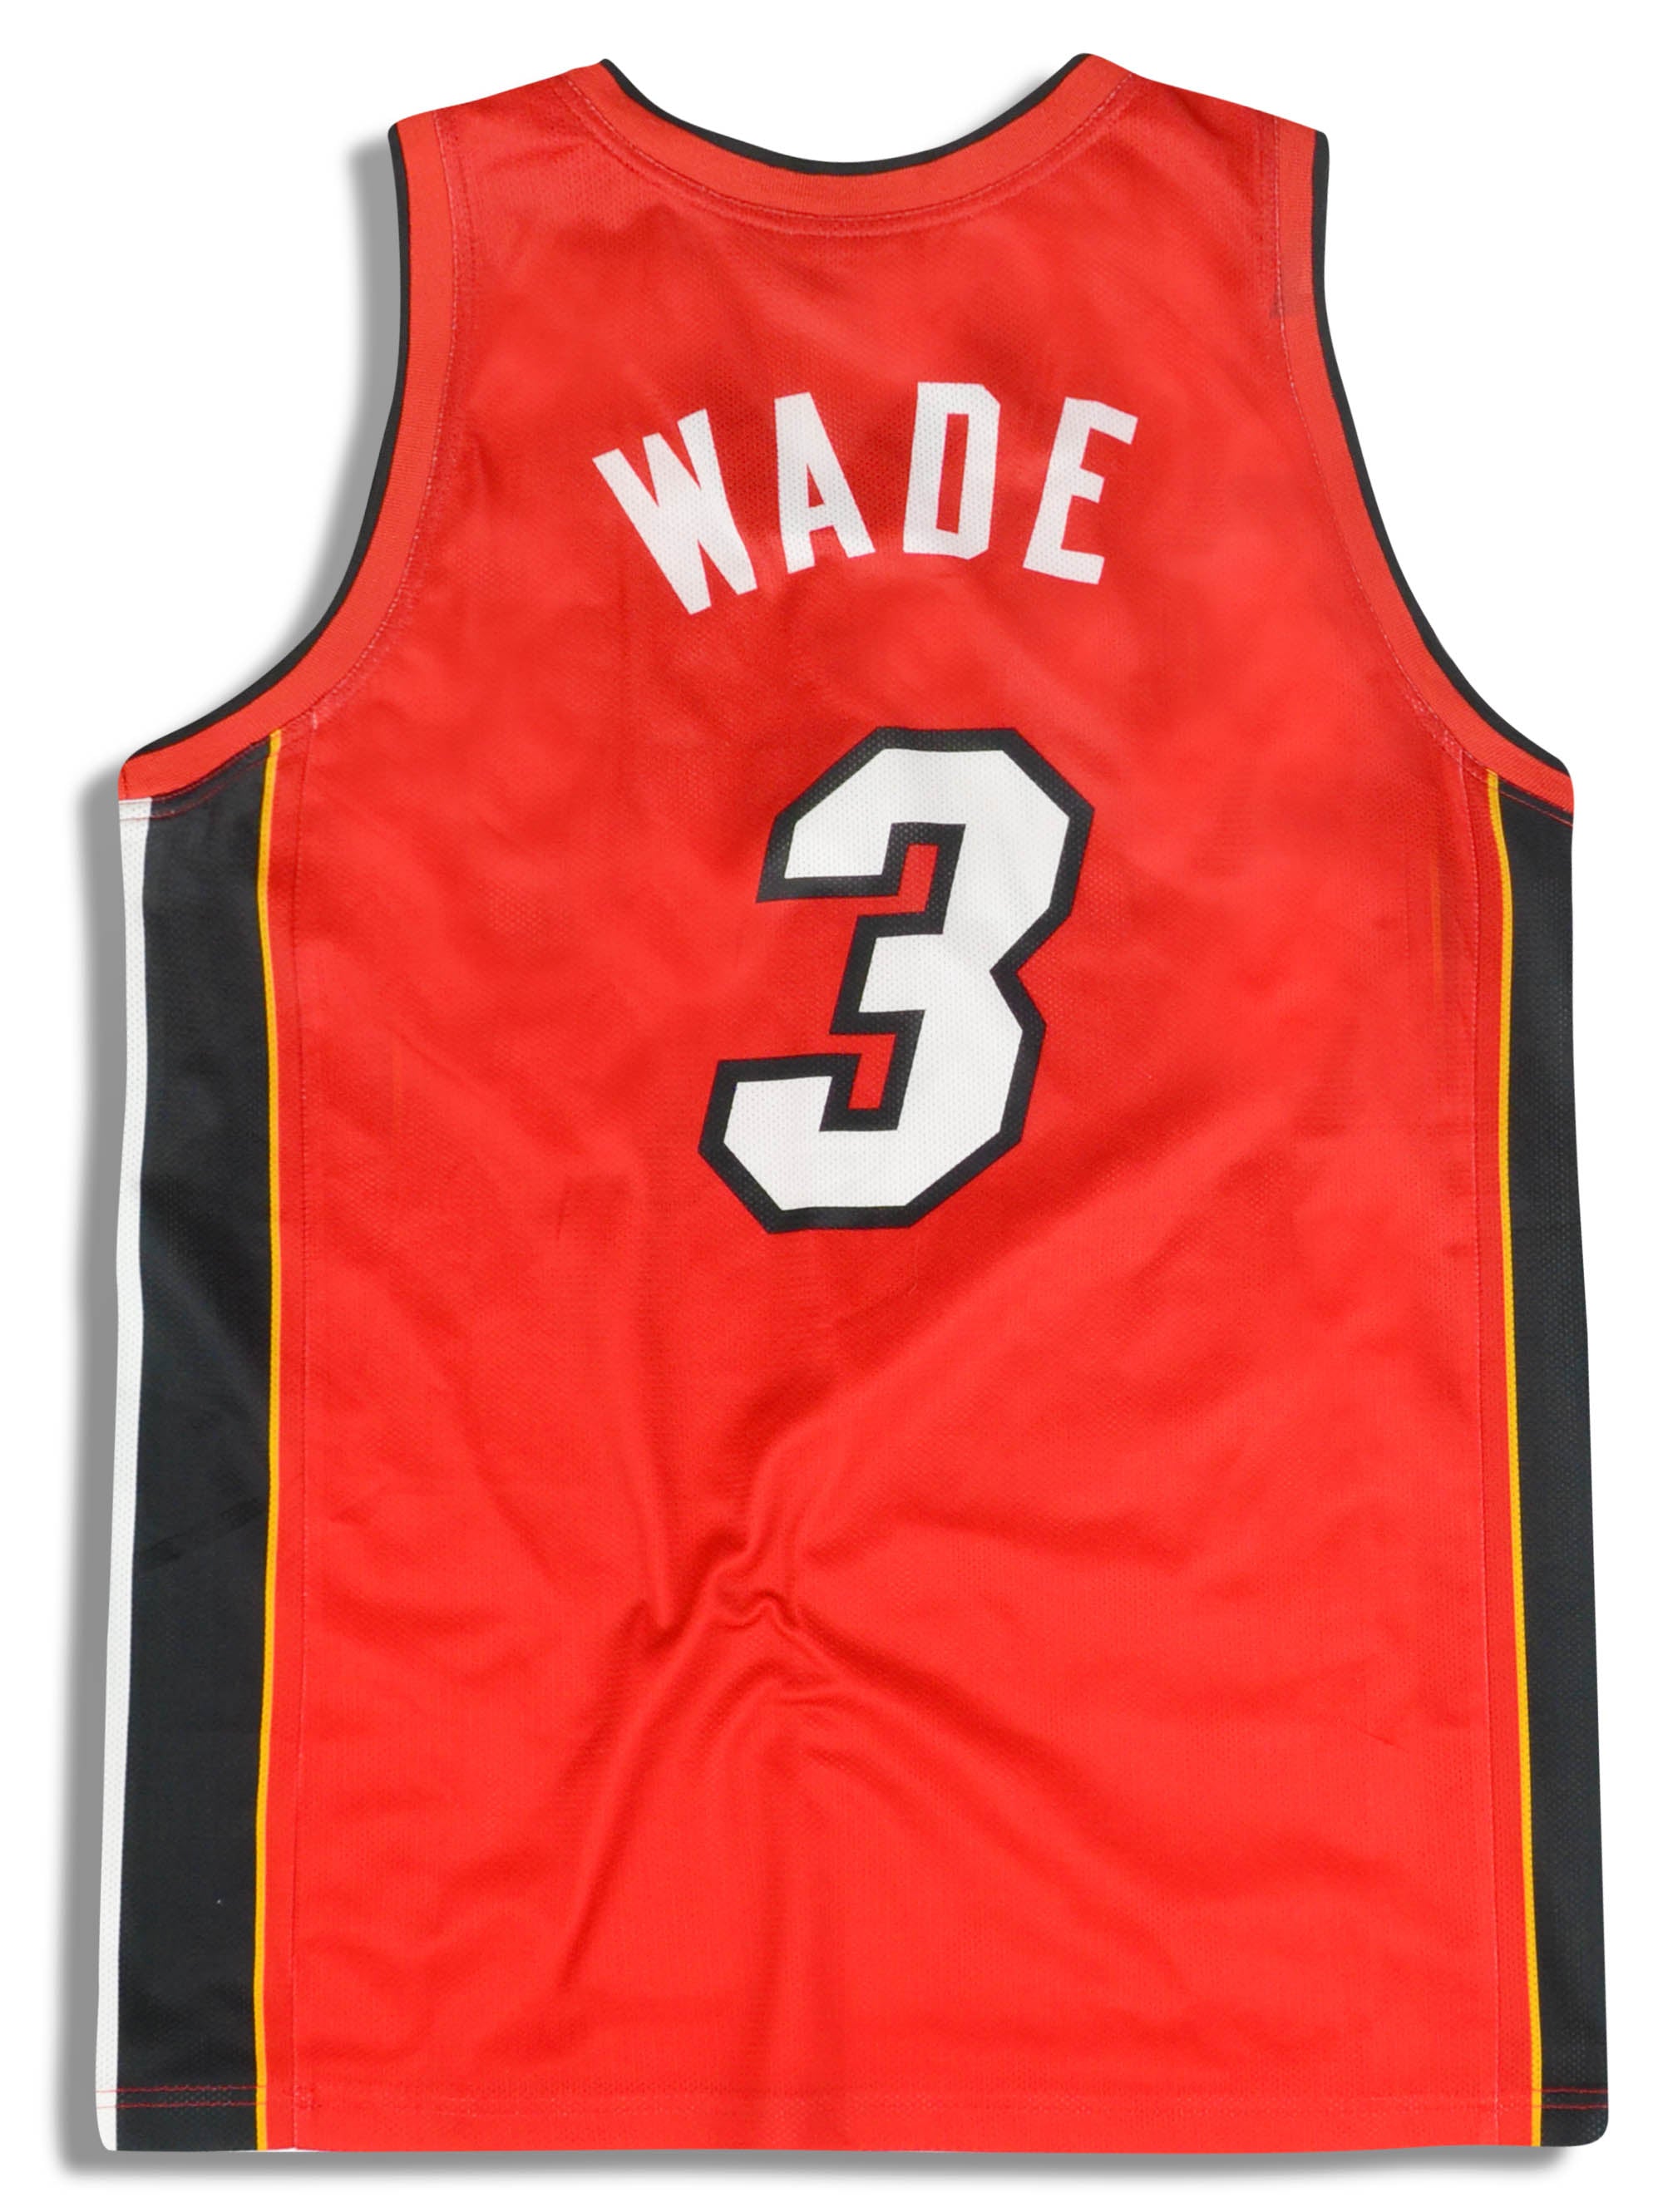 Old Dwayne Wade Miami Heat Jersey for Sale in Phoenix, AZ